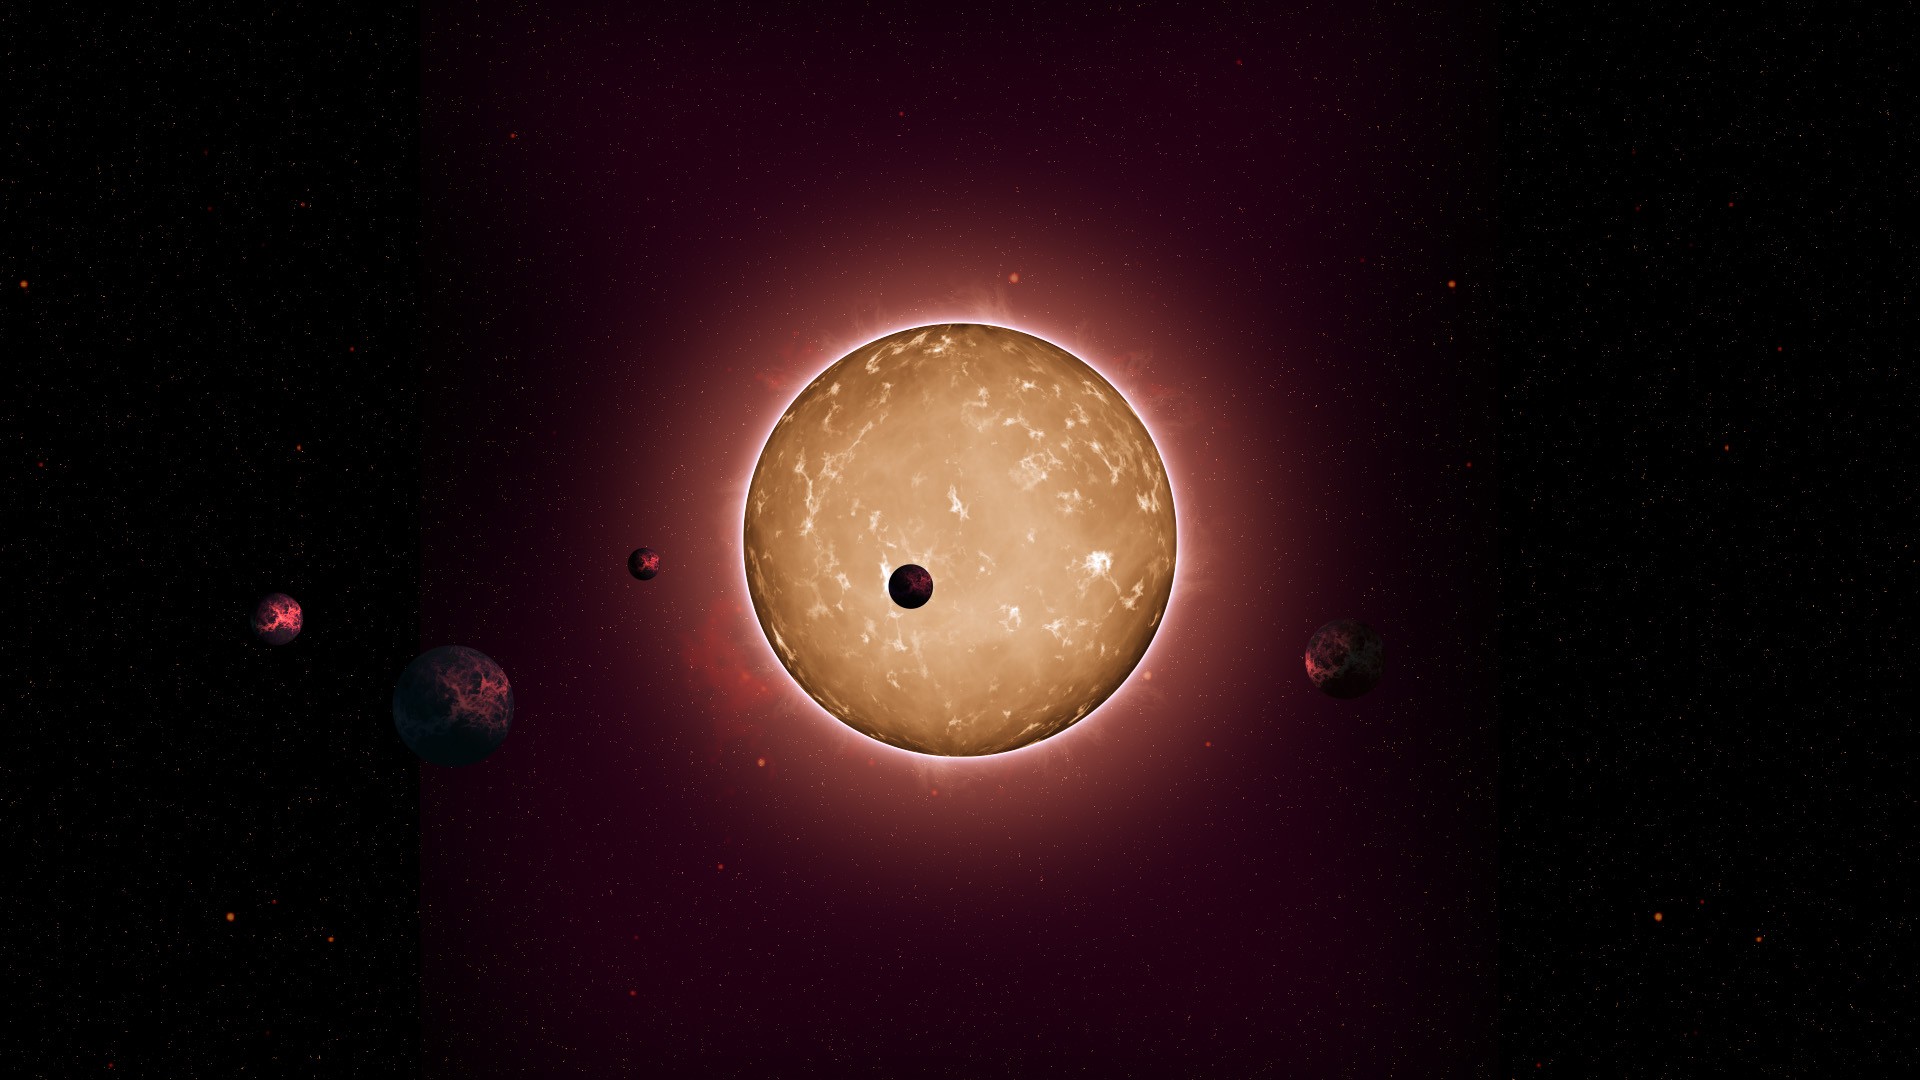 Concepção artística da Kepler-444, uma estrela com planetas rochosos duas vezes e meia mais velha que o Sol (Foto: Tiago Campante/Peter Devine/NASA)